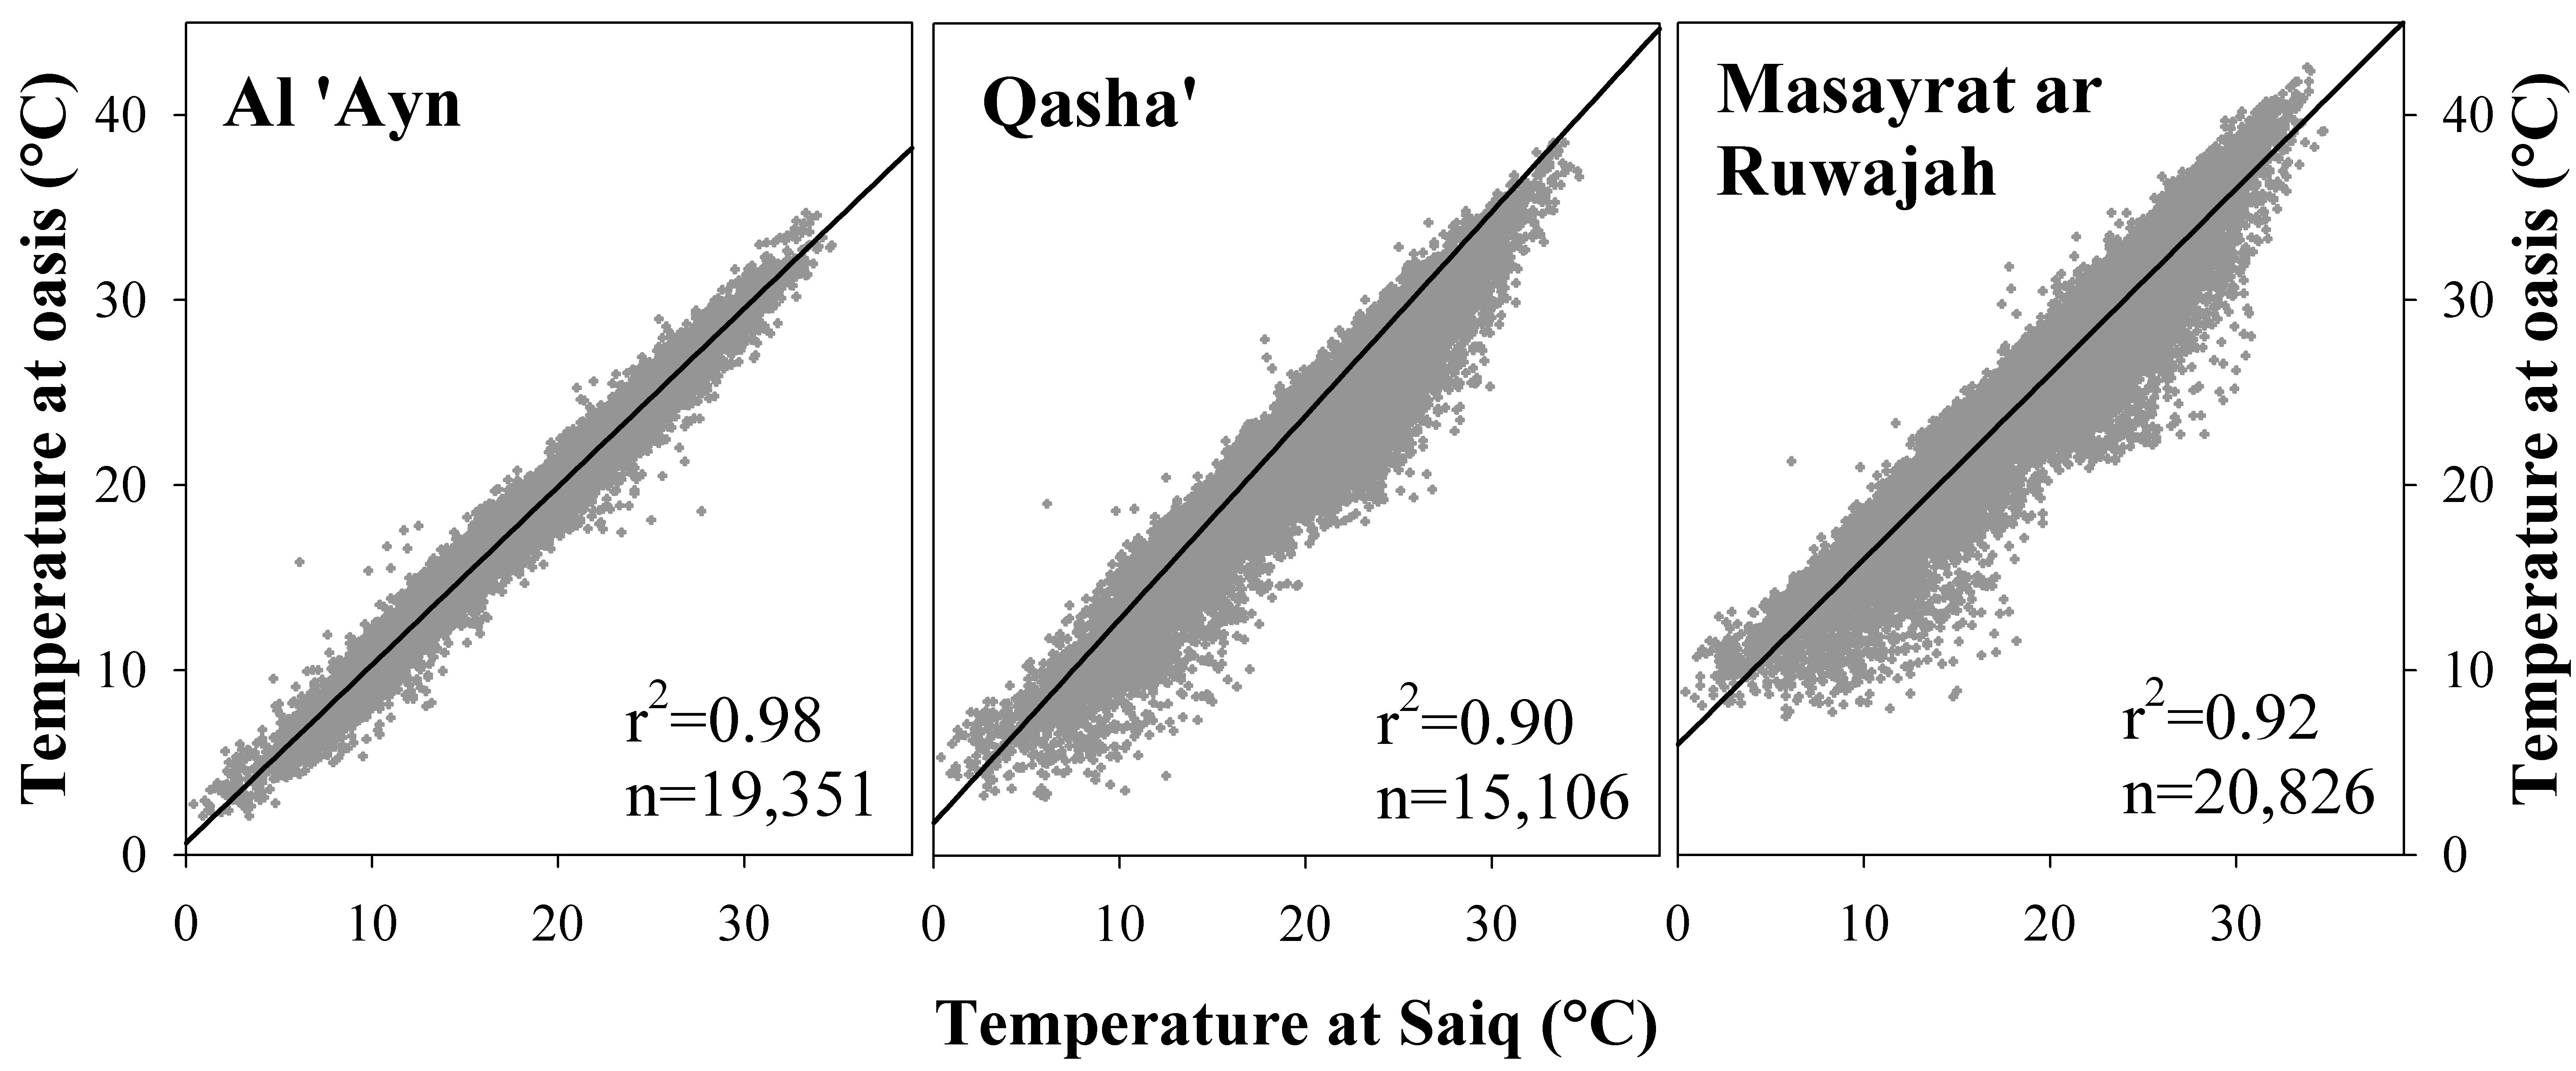 Regression between temperature at Saiq and temperature in three oases, Al Jabal Al Akhdar, Oman